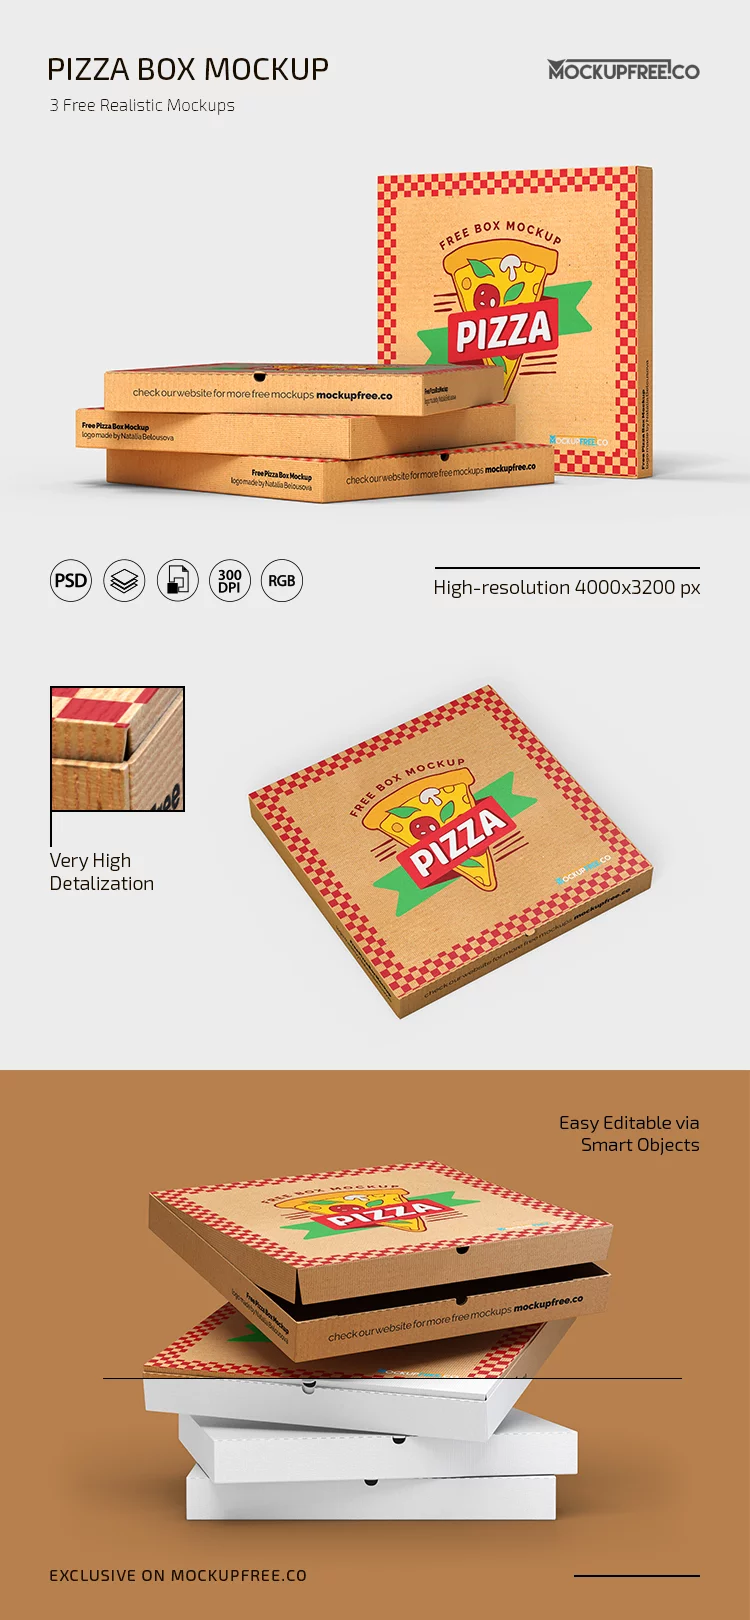 Free Pizza Box Mockup in PSD